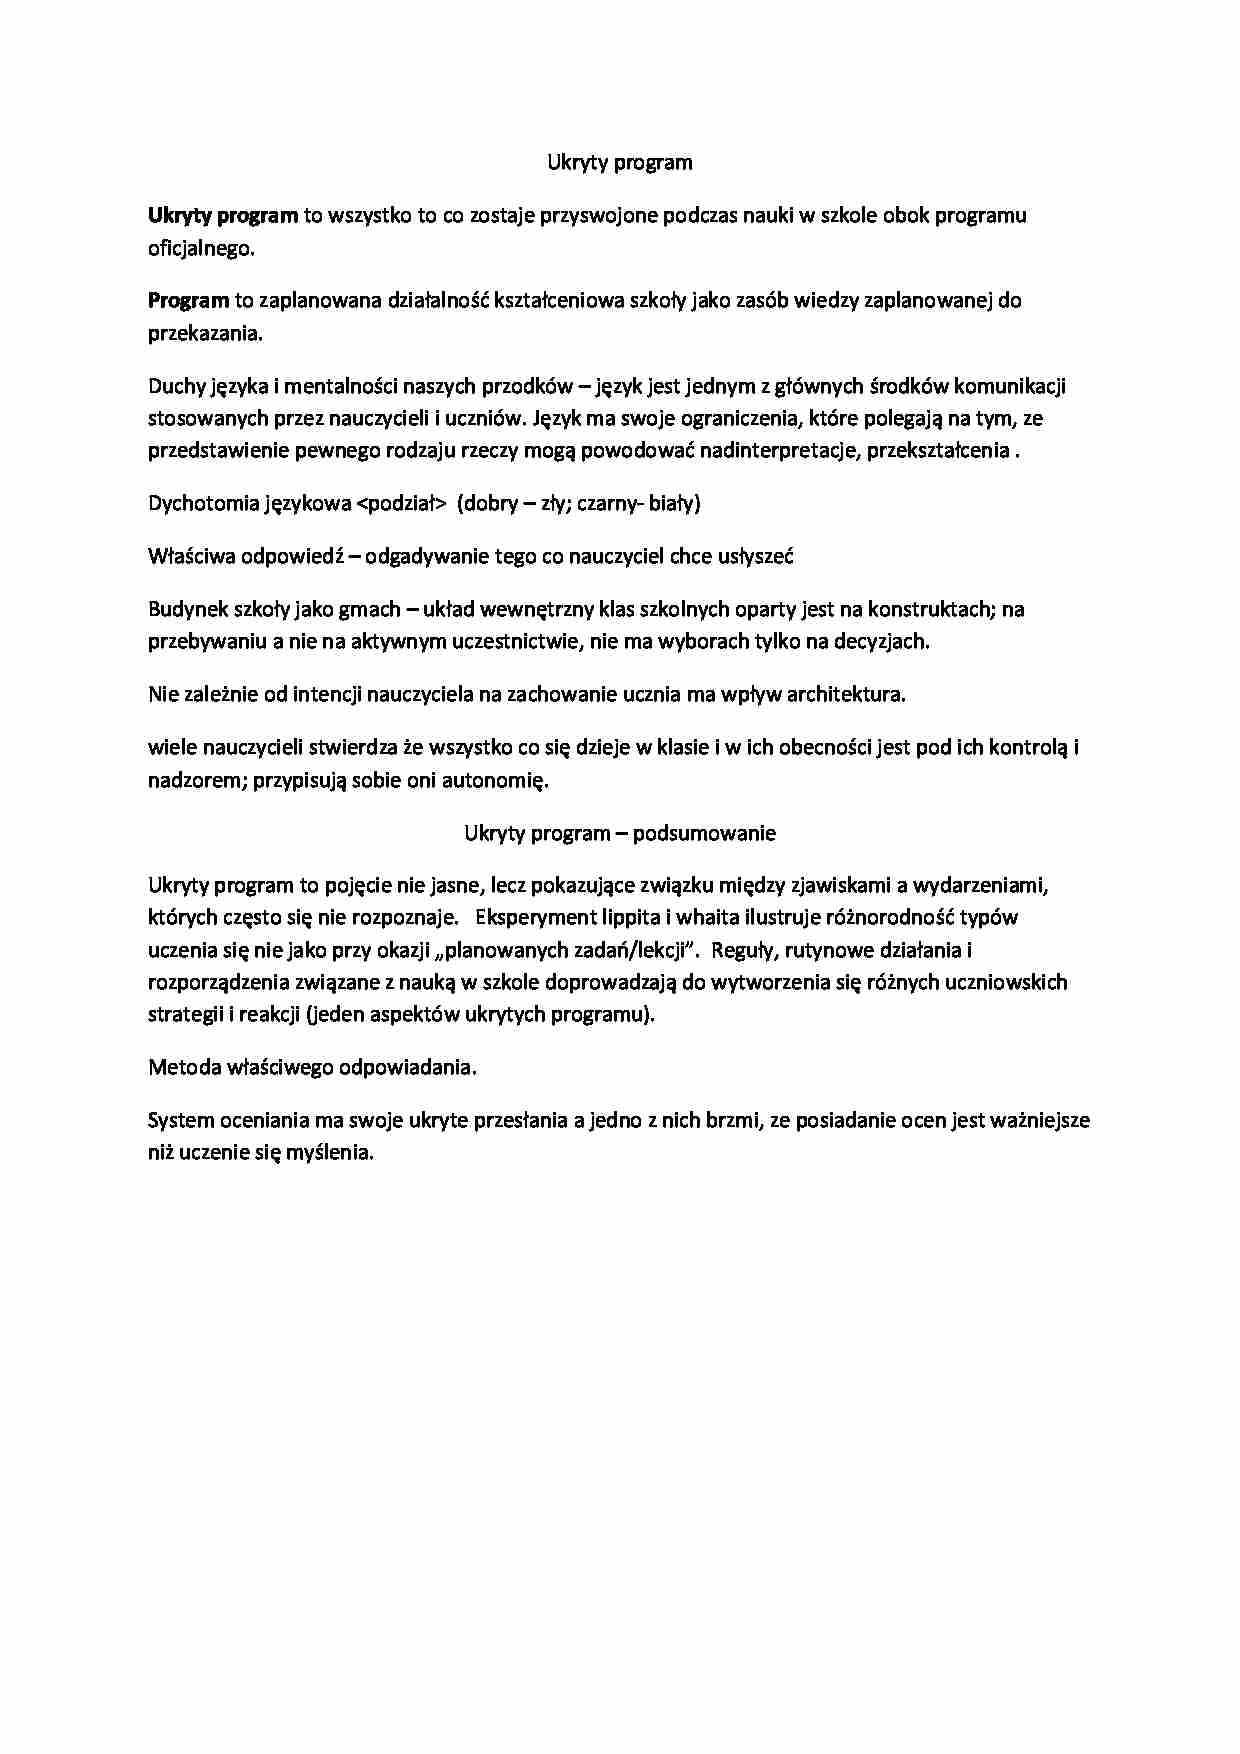 Socjologia edukacji -  ukryty program - omówienie - strona 1